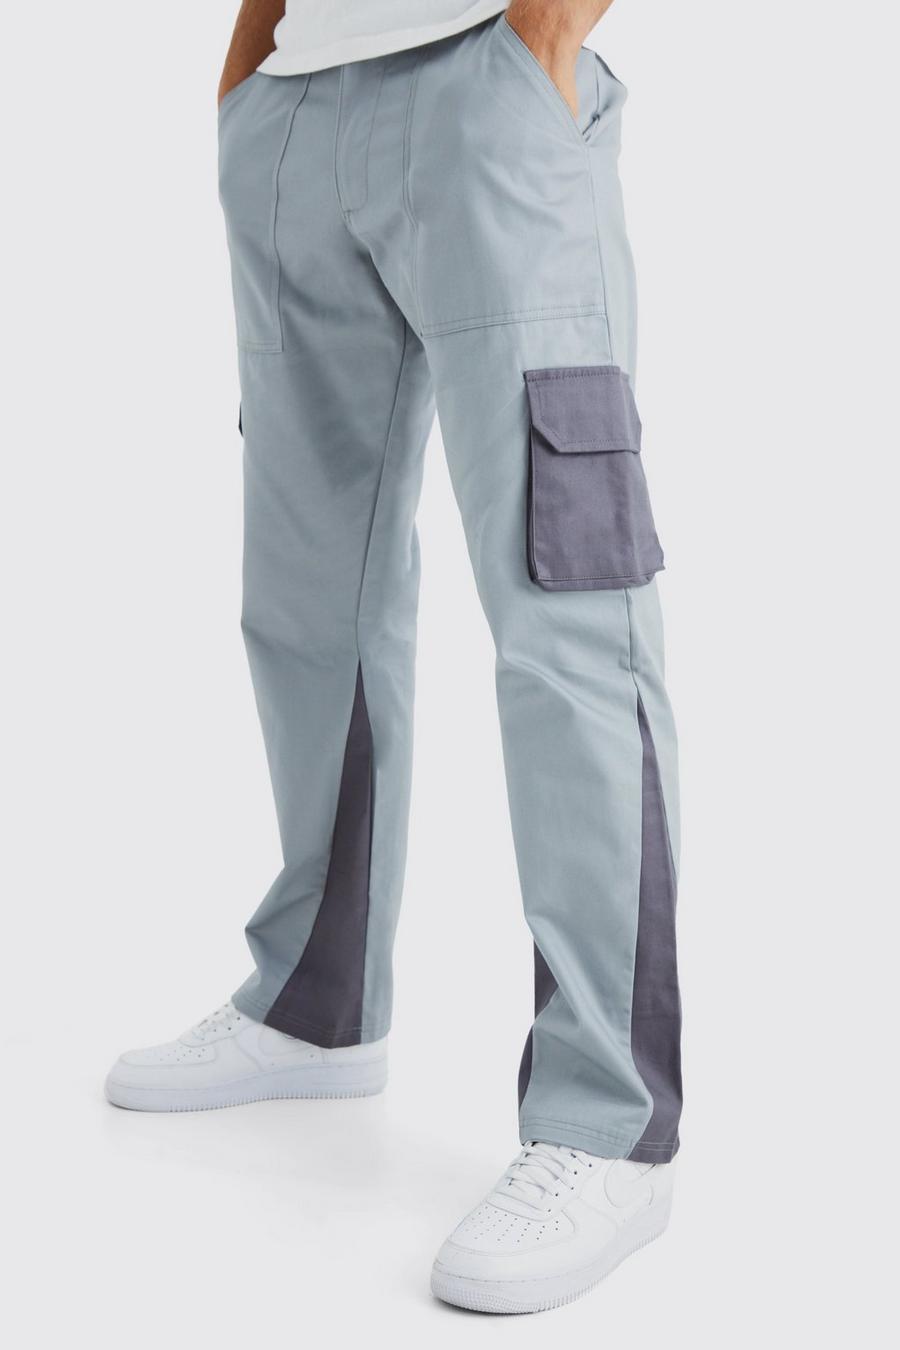 Slate Tall Slim Flare Gusset Colour Block Cargo Trouser